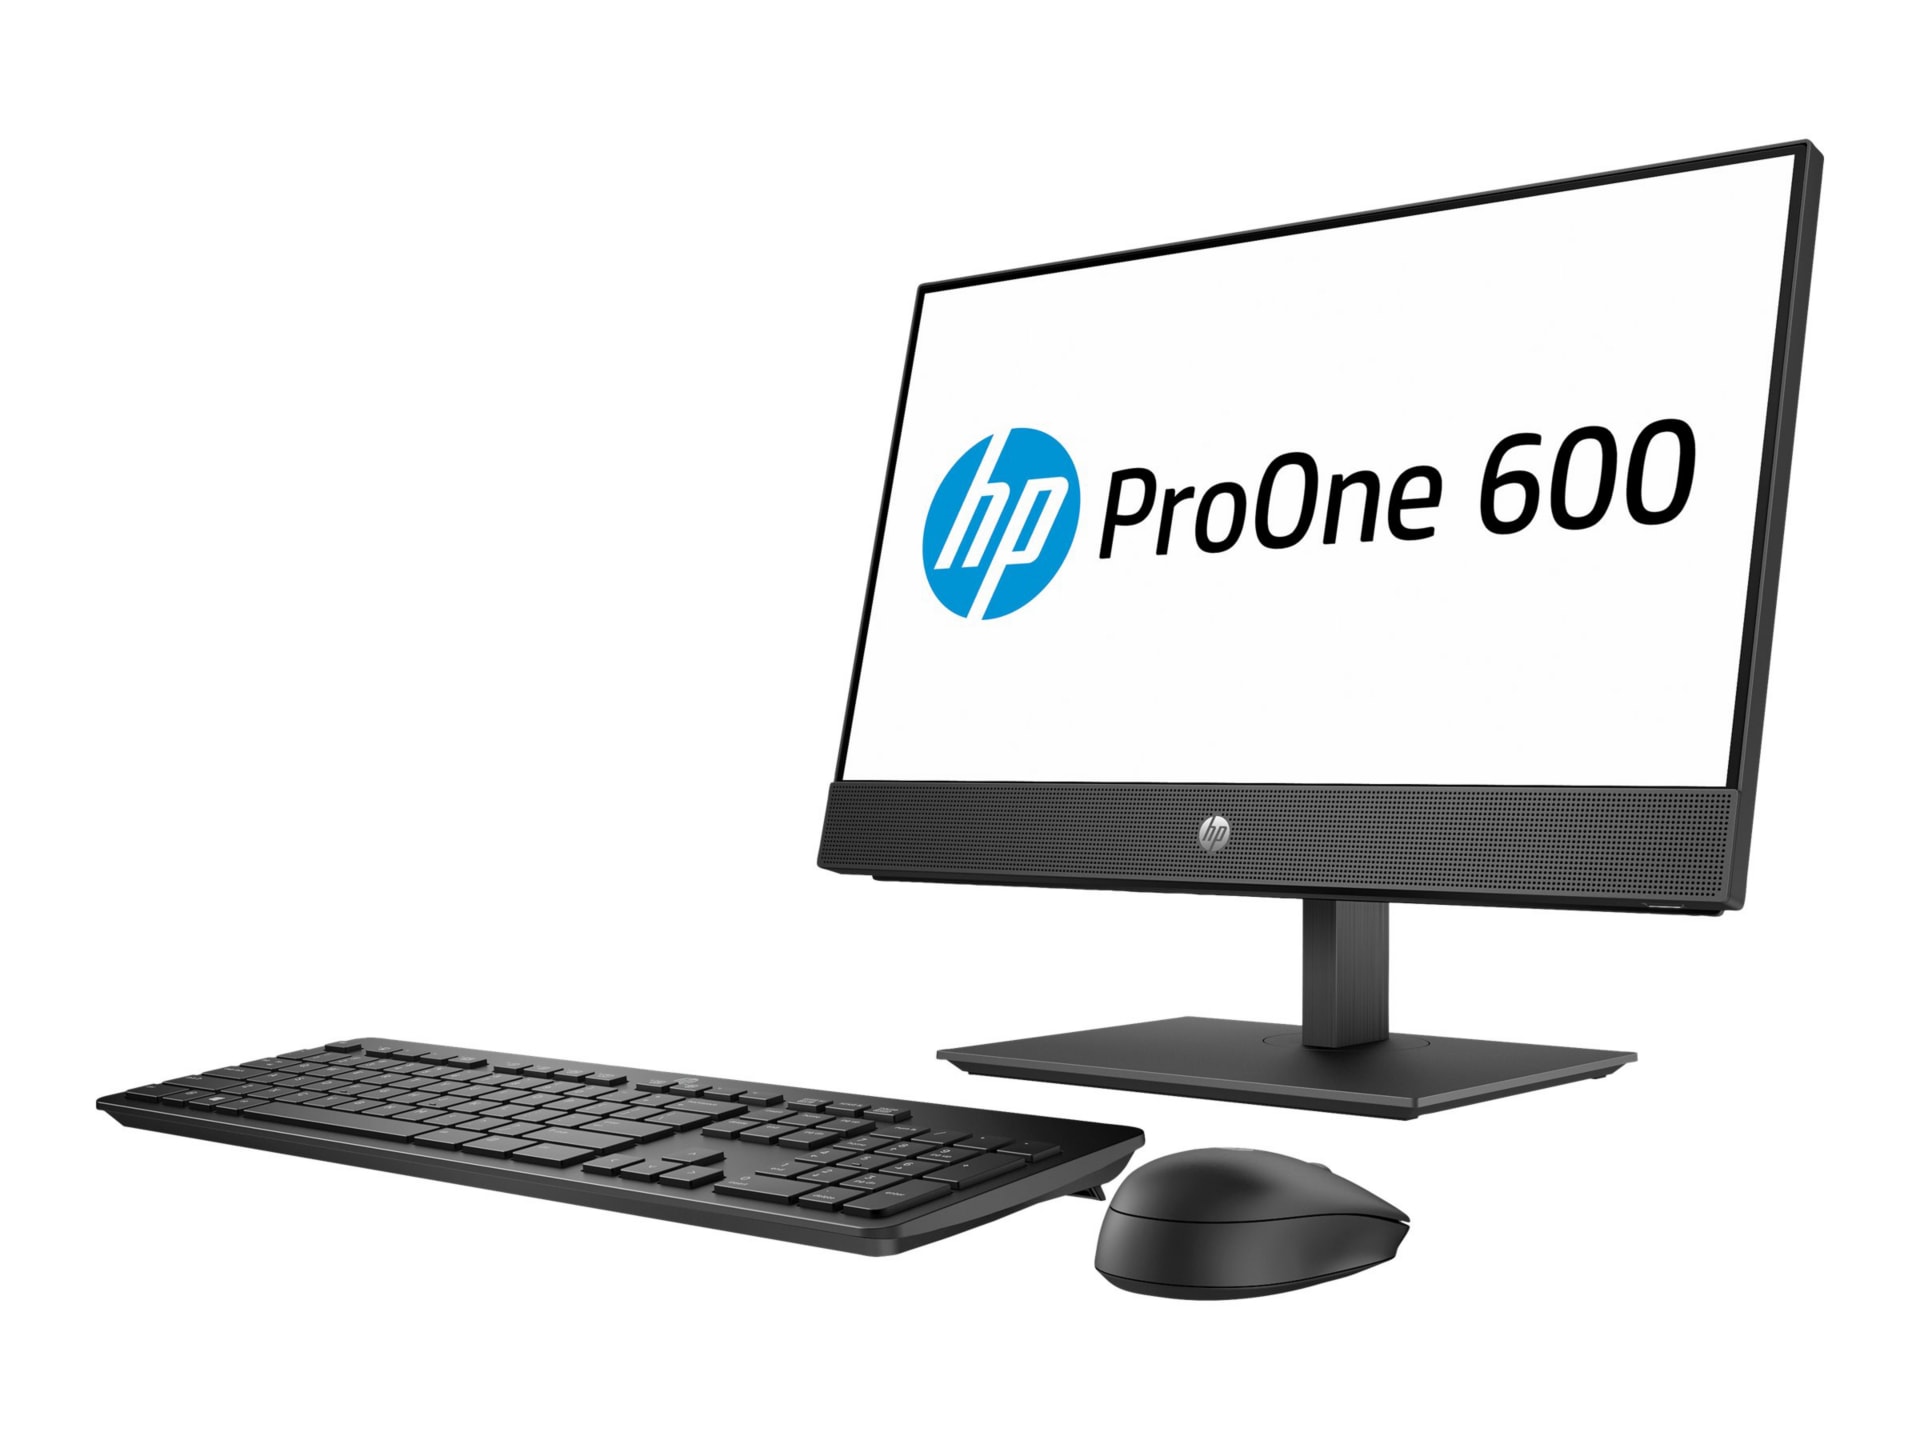 HP SB ProOne 600 G4 AiO 21.5" Core i5-8500 8GB RAM 1TB W10P - Non-Touch